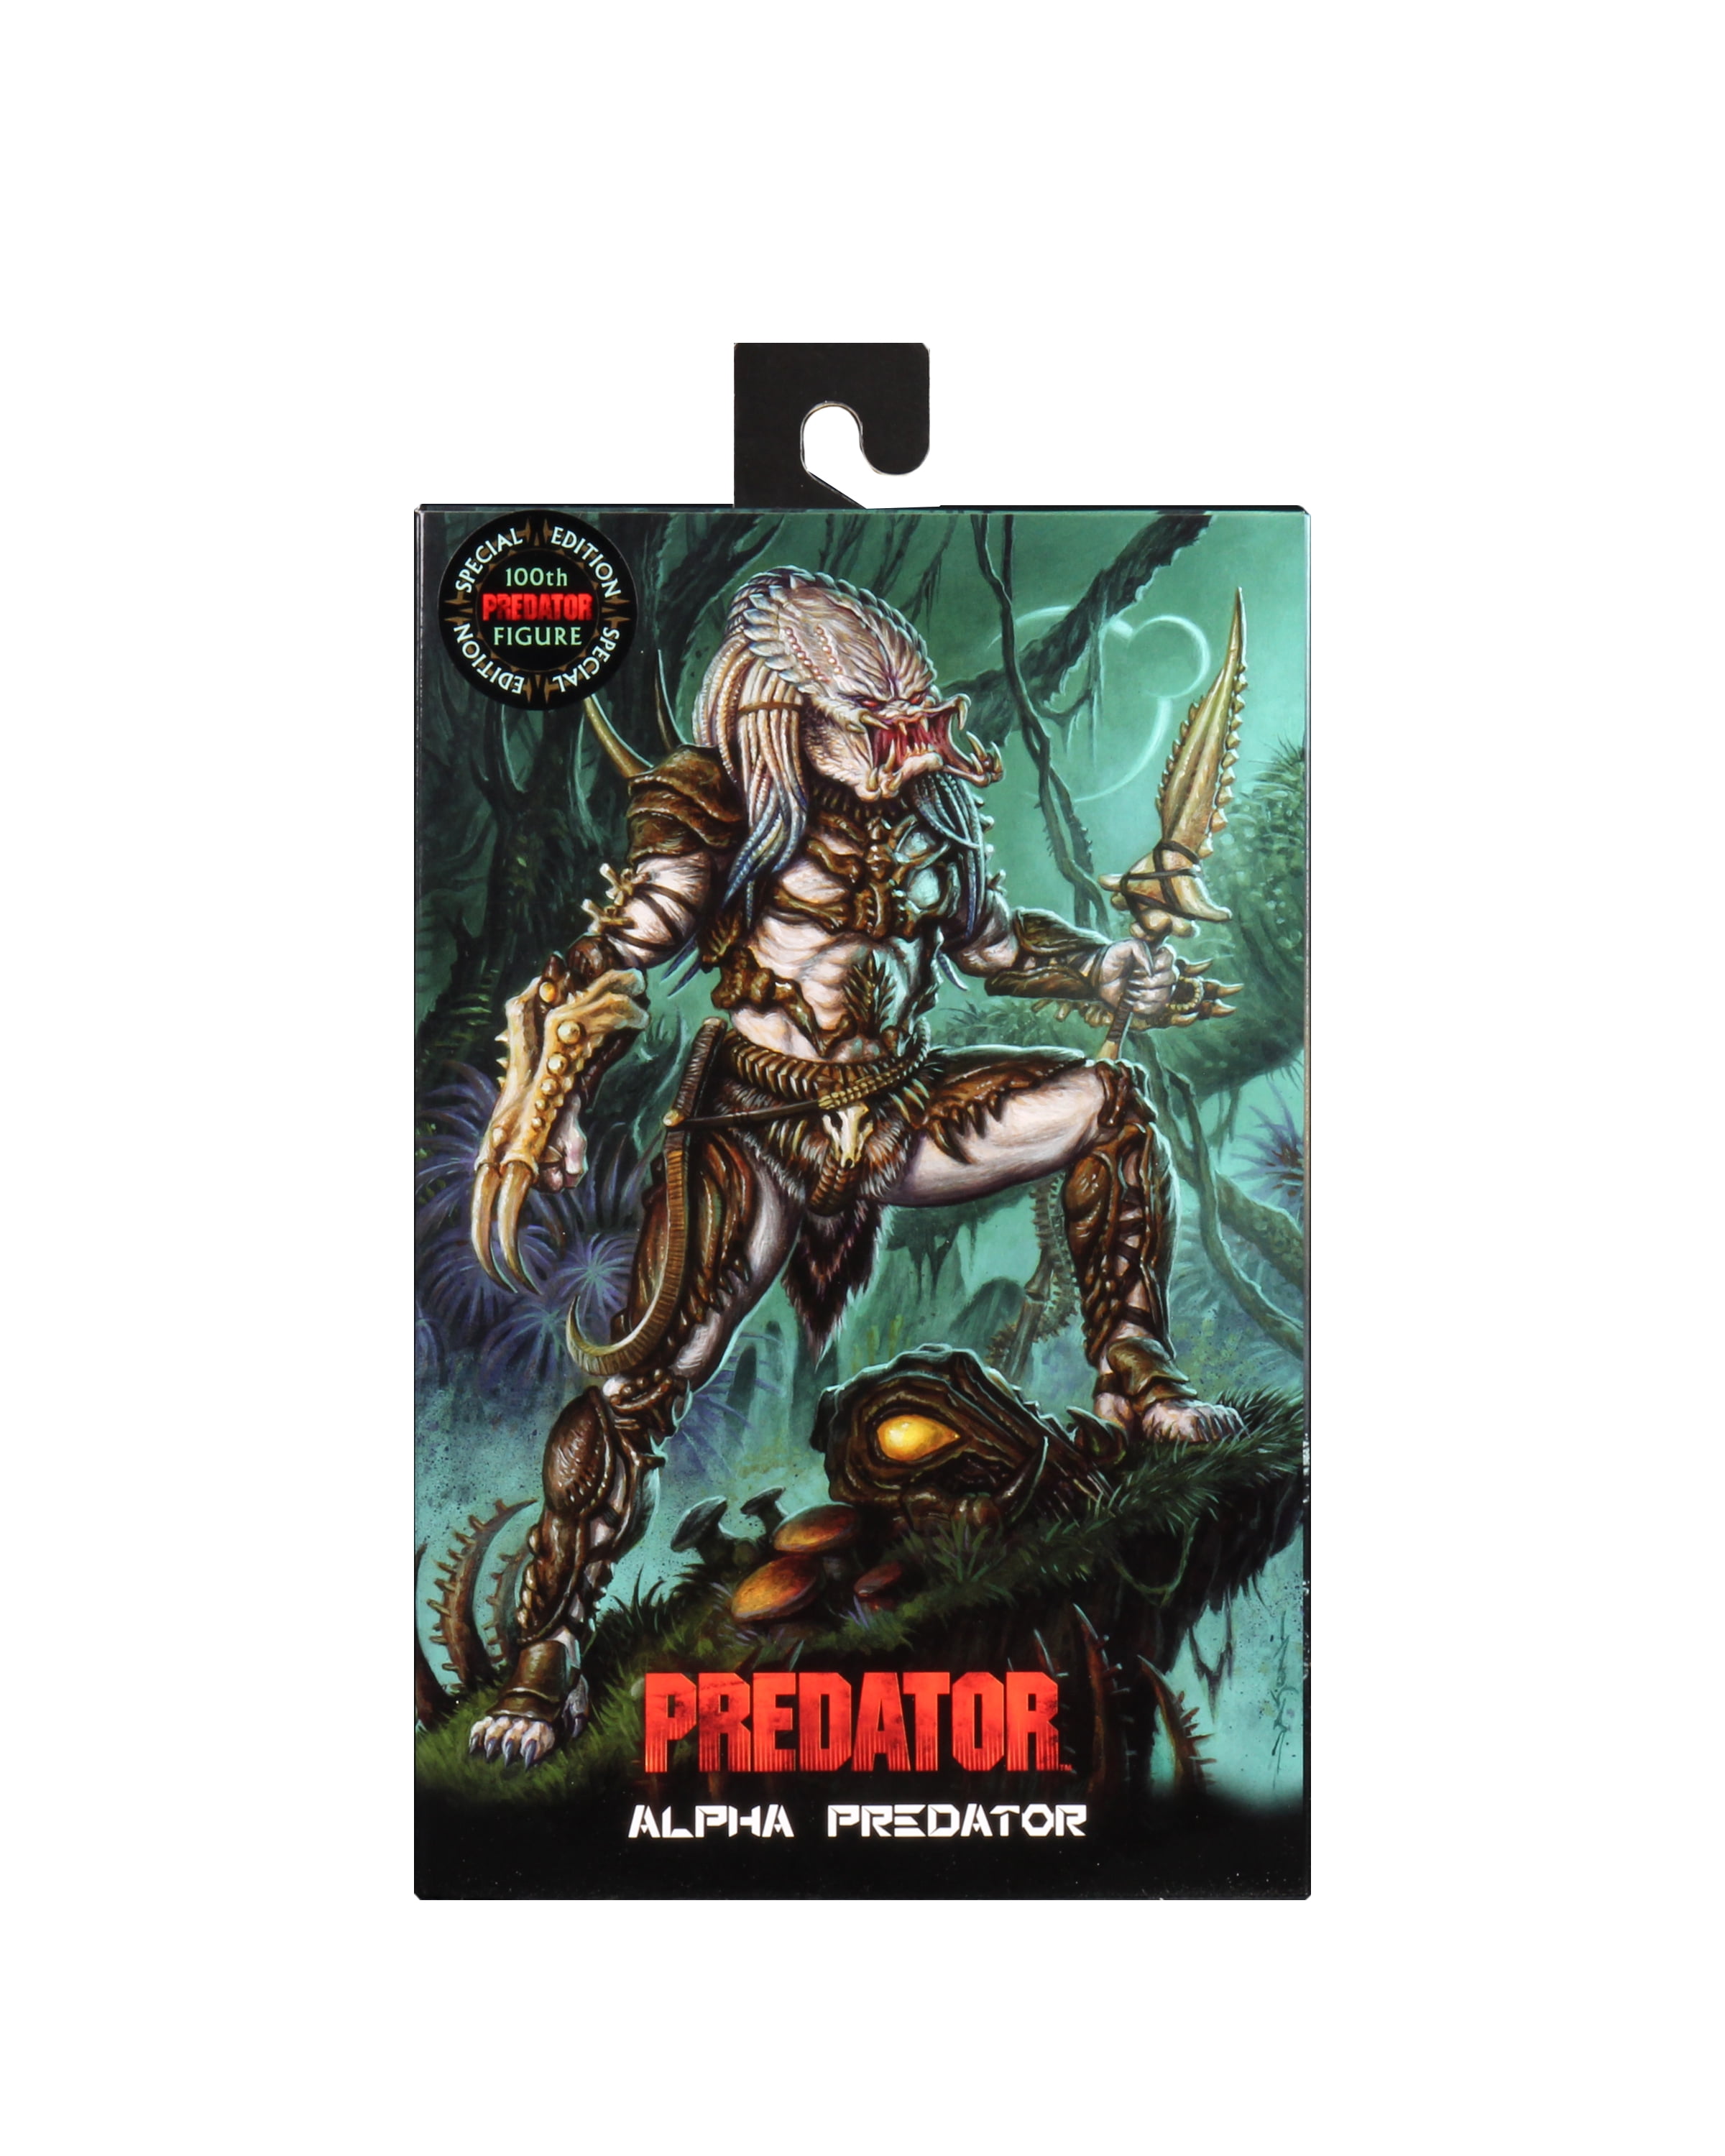 Predator Ultimate Alpha Predator 100th Edition Statue Action Figure 7 Inches 